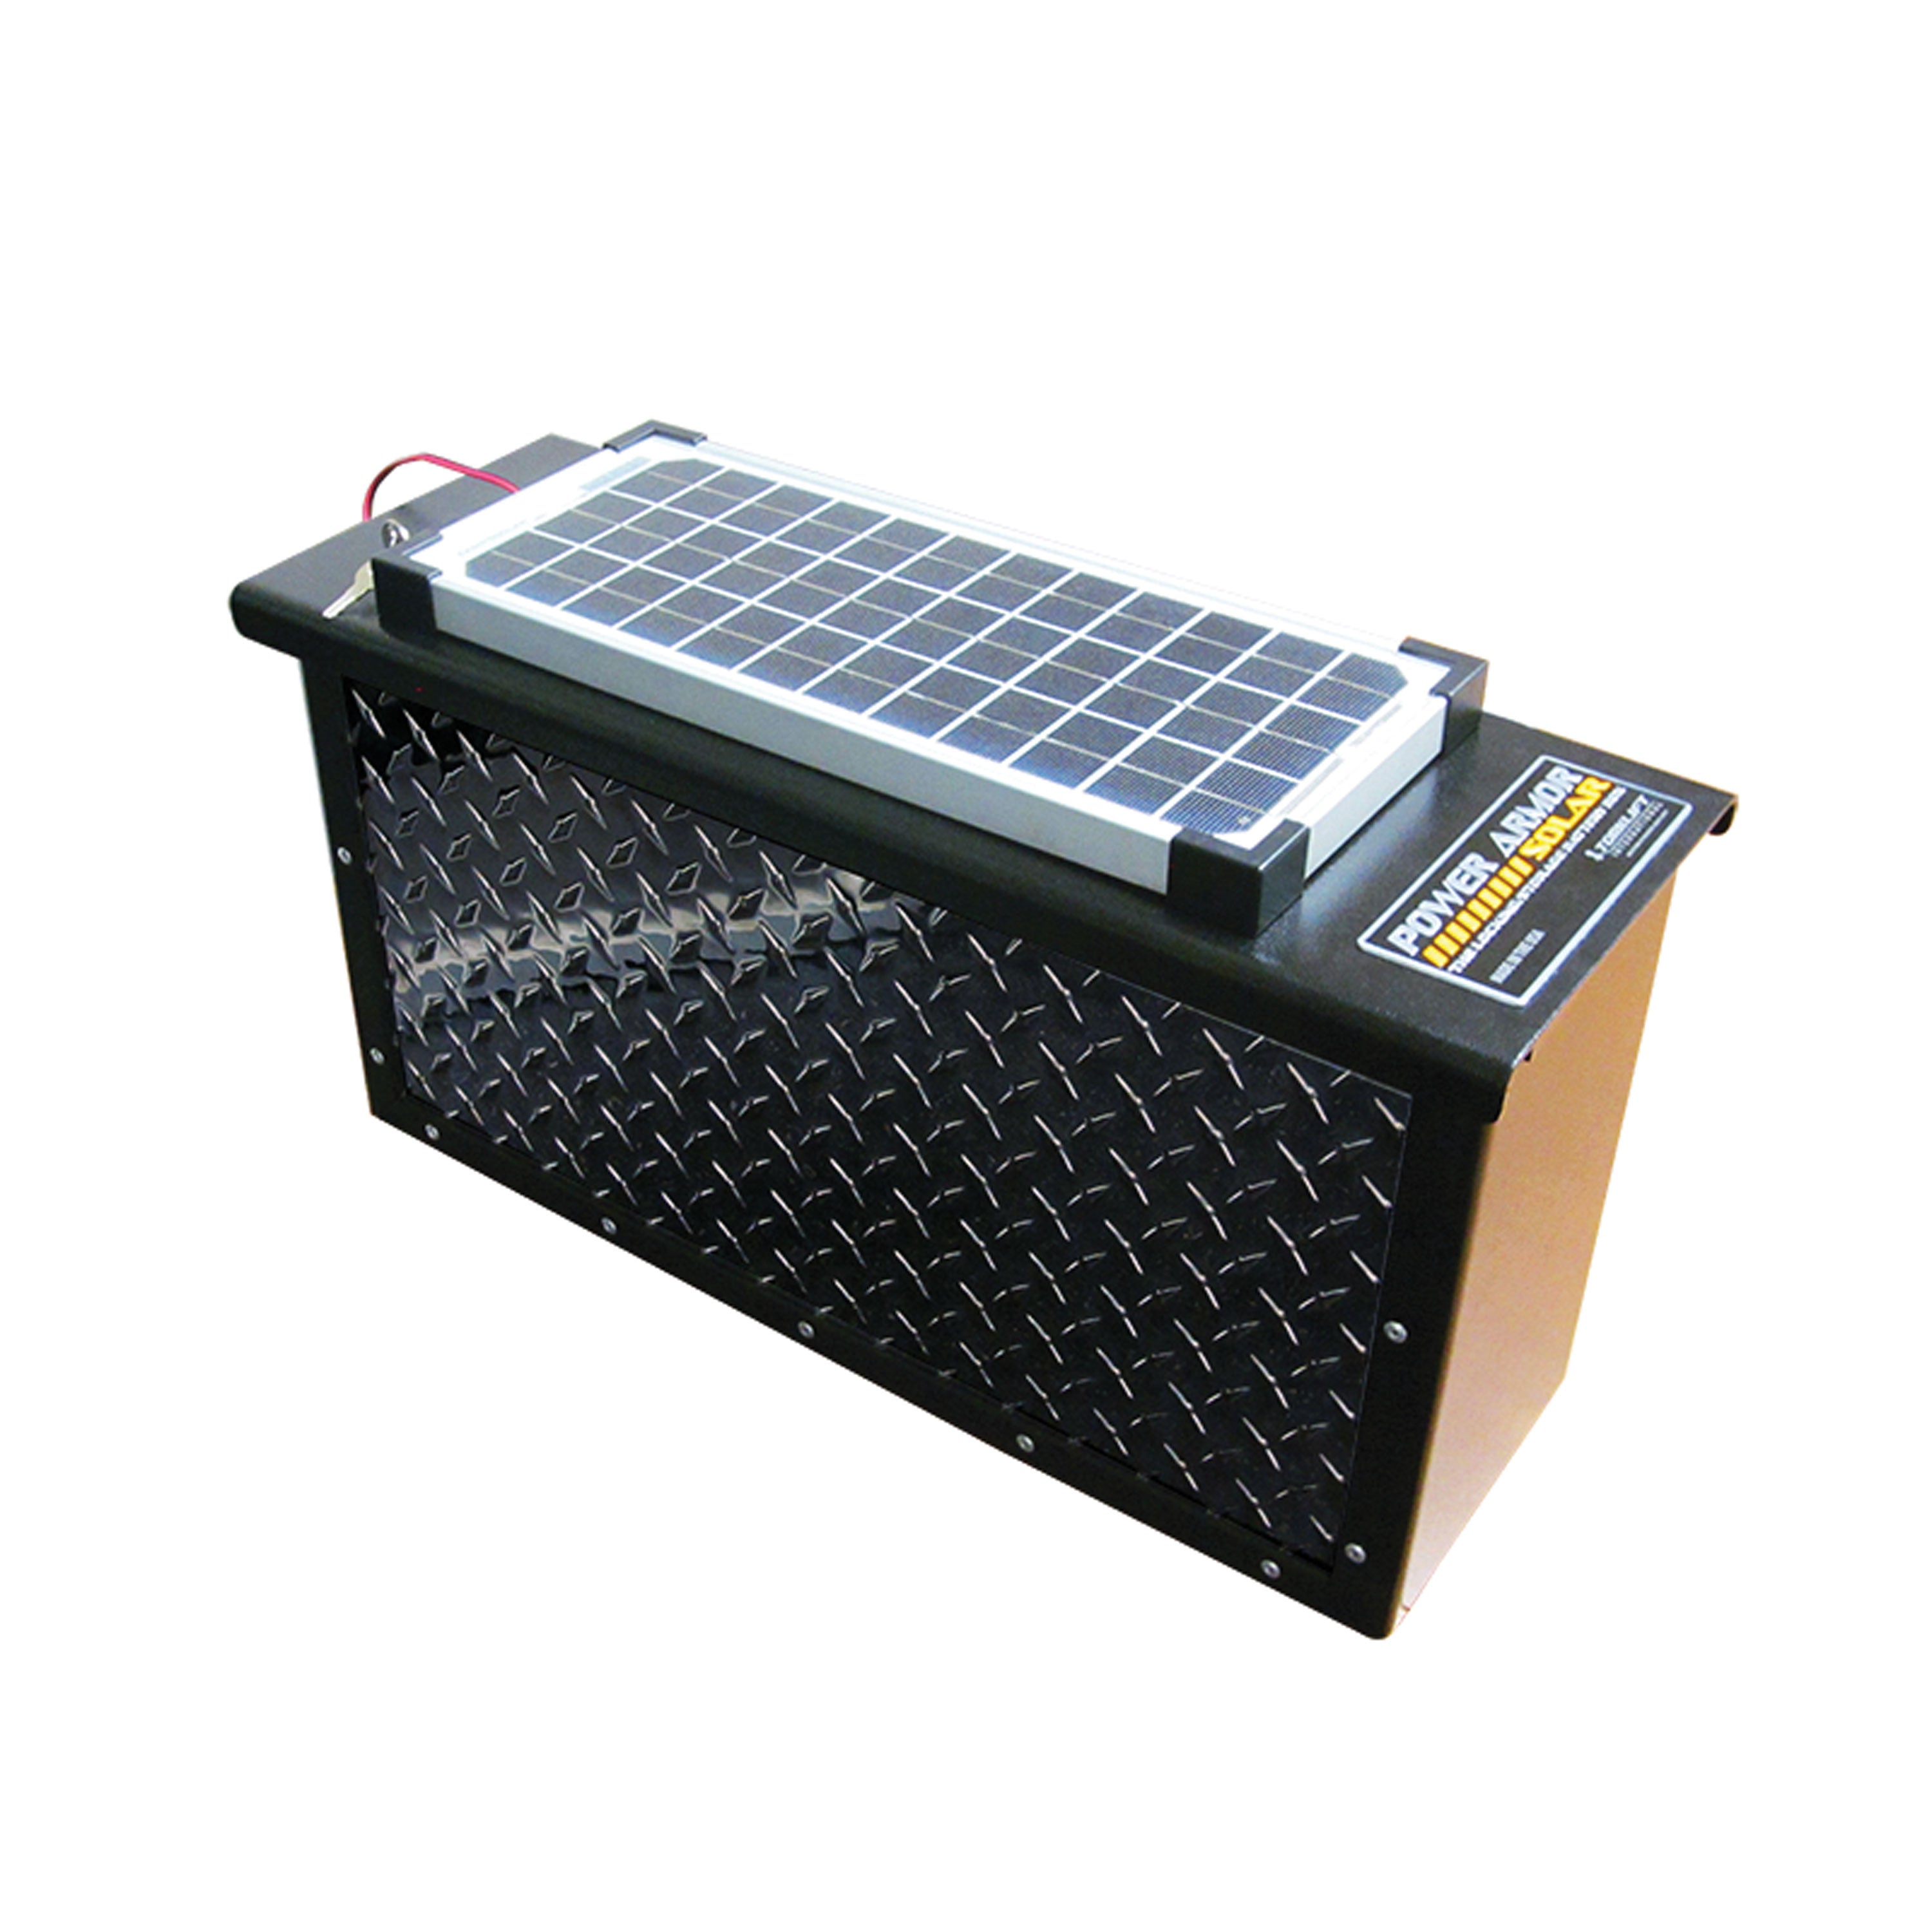 Torklift A7710Rs SolarPowerArmor Max - Black Tread, 58-1/2" X 7-5/8"W X 14-1/8"